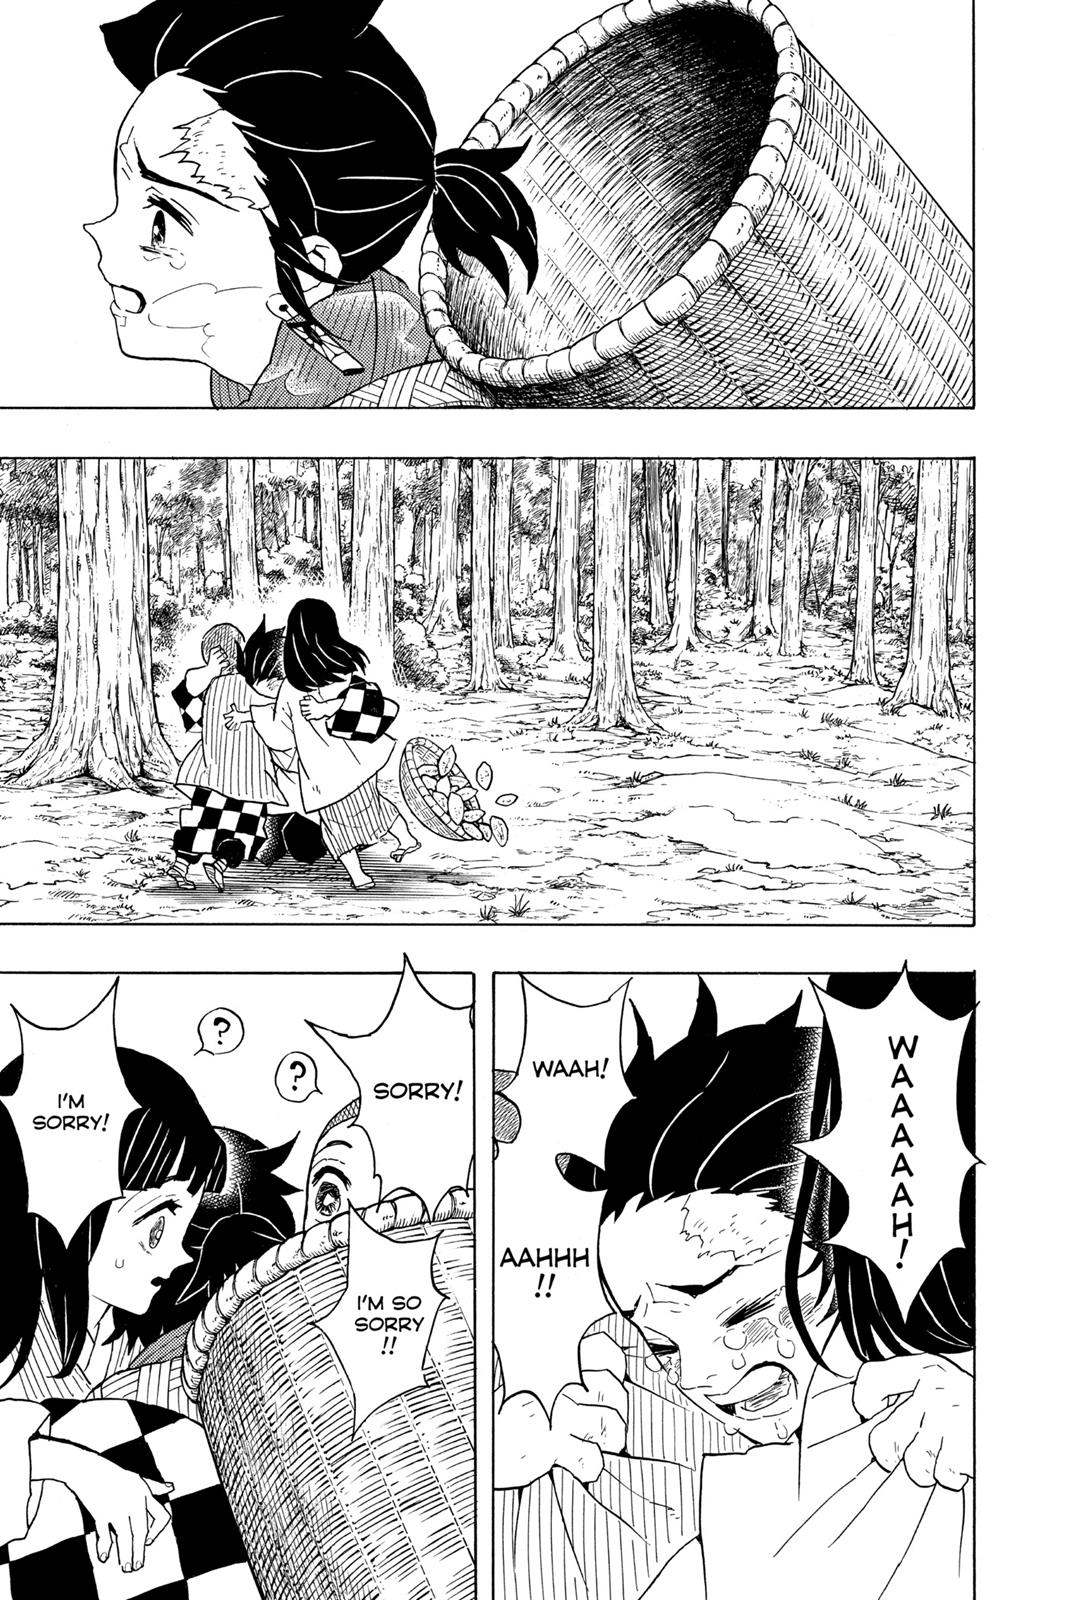 Demon Slayer Manga Manga Chapter - 55 - image 13